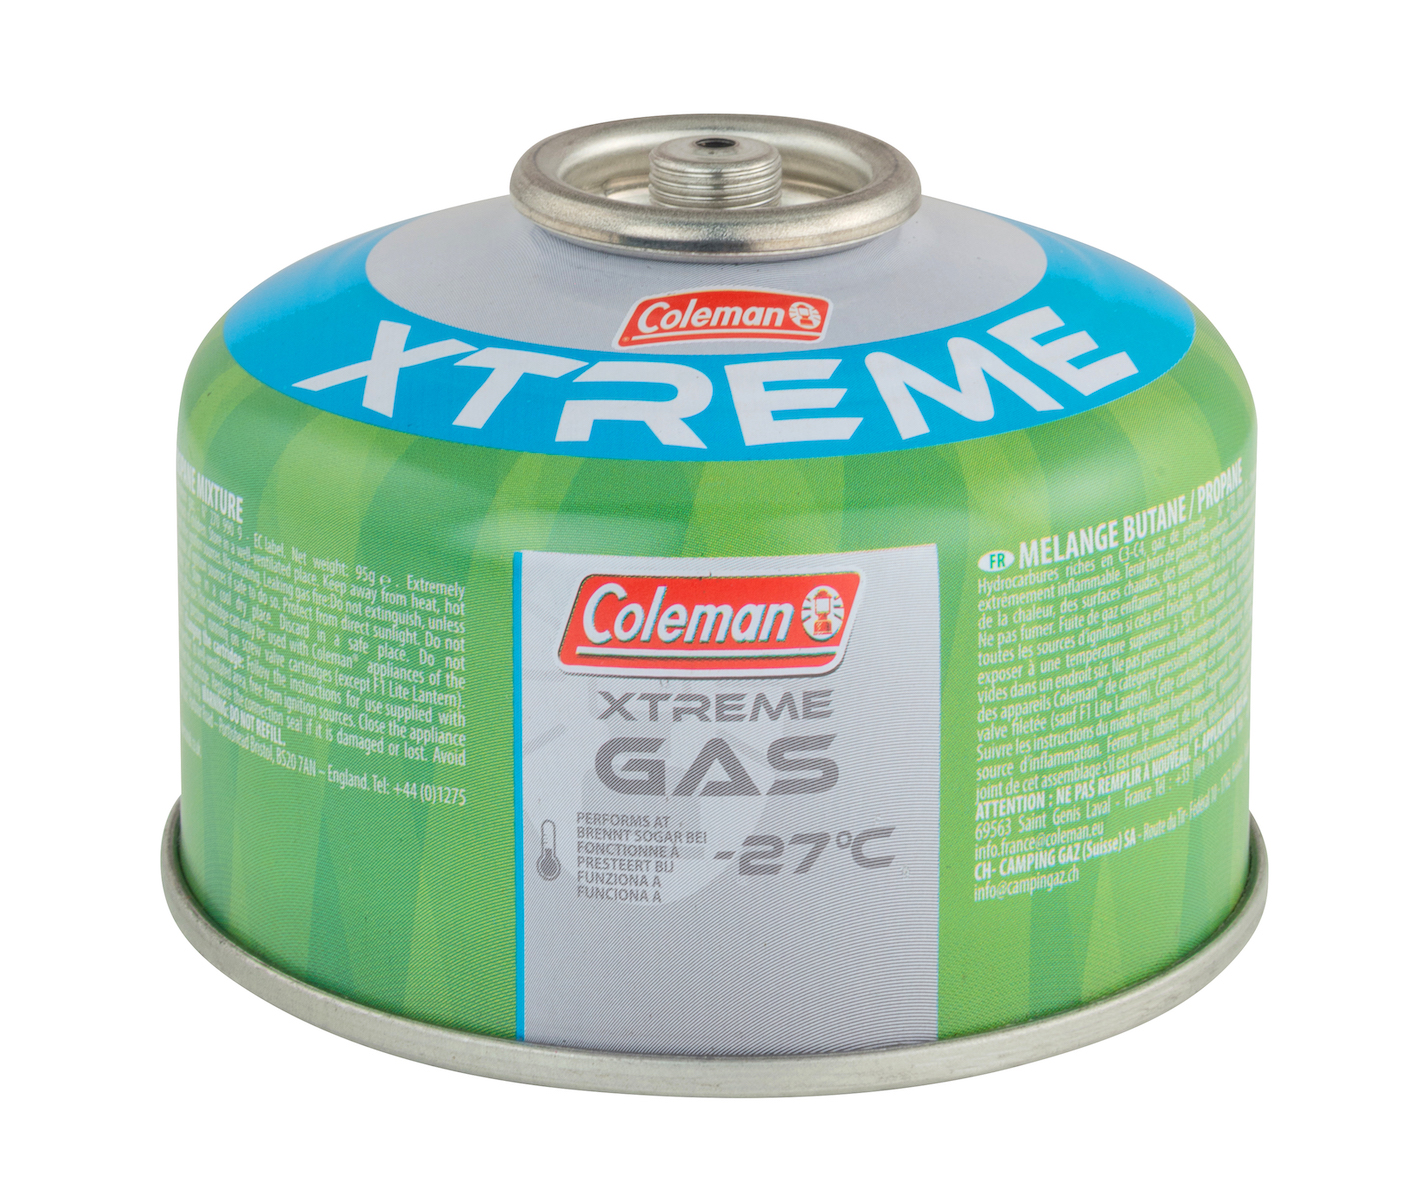 Gas-Ventilkartusche C100 Xtreme